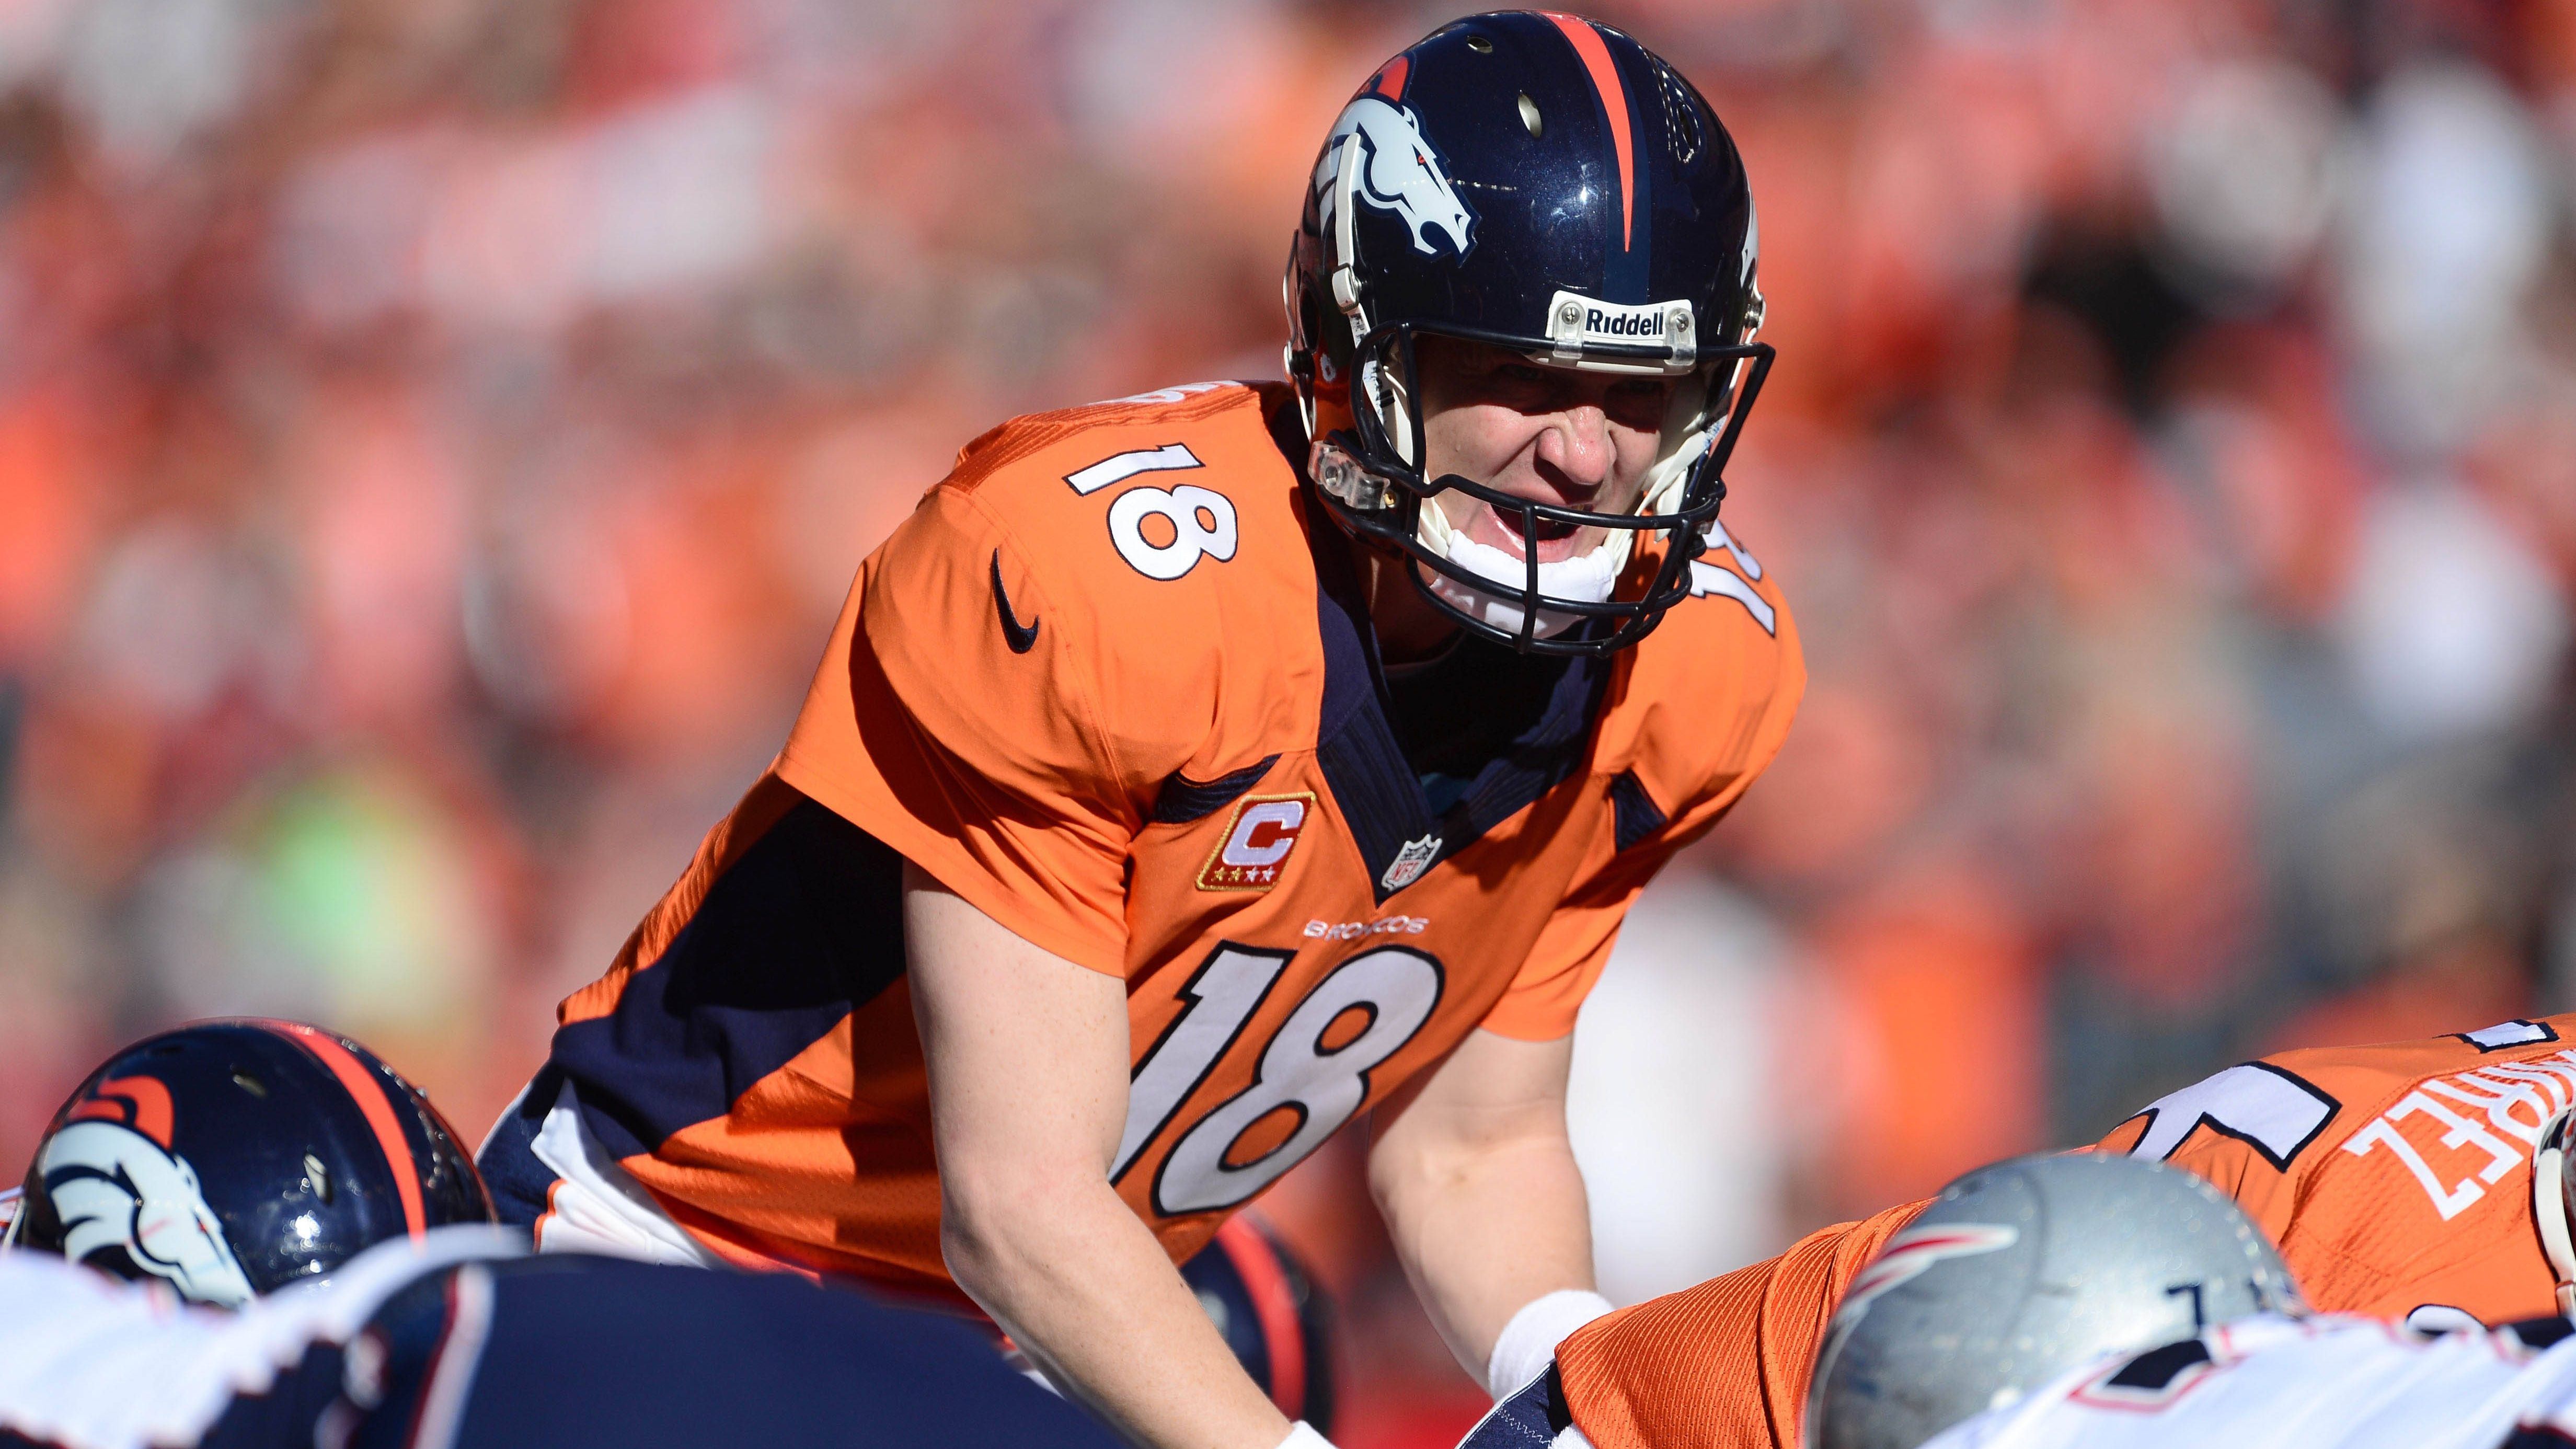 <strong>Platz 2: Peyton Manning zu den Denver Broncos (2012)</strong><br>Manning belebte die Broncos wieder und führte sie zu mehreren AFC-West-Titeln, Super-Bowl-Teilnahmen und einem Sieg im Super Bowl 50 - der Schlusspunkt seiner Hall-of-Fame-Karriere.